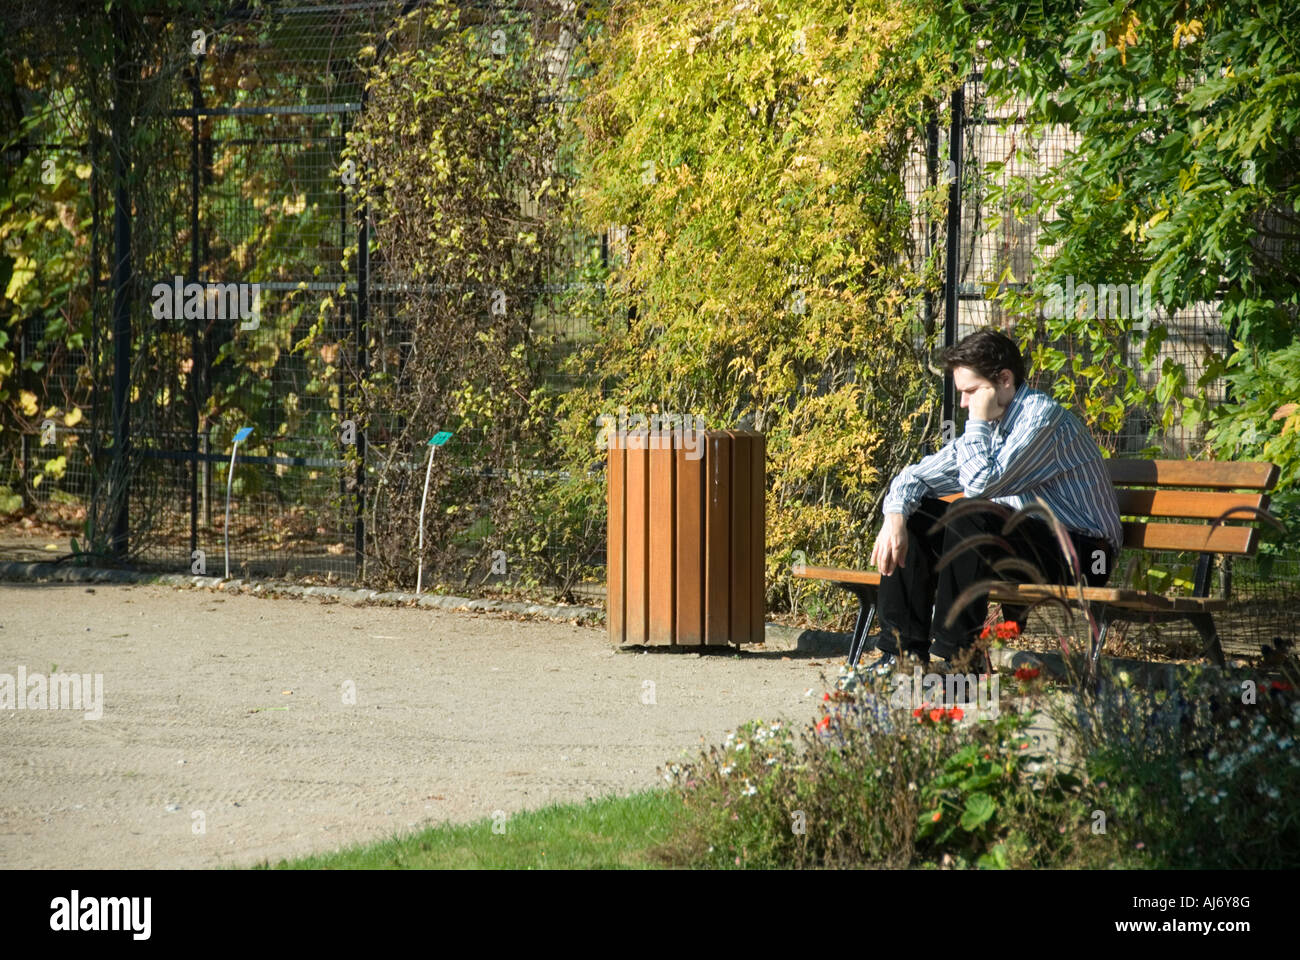 Stock Foto von einem jungen Mann allein sitzen tief in Gedanken versunken in einem öffentlichen Garten Stockfoto